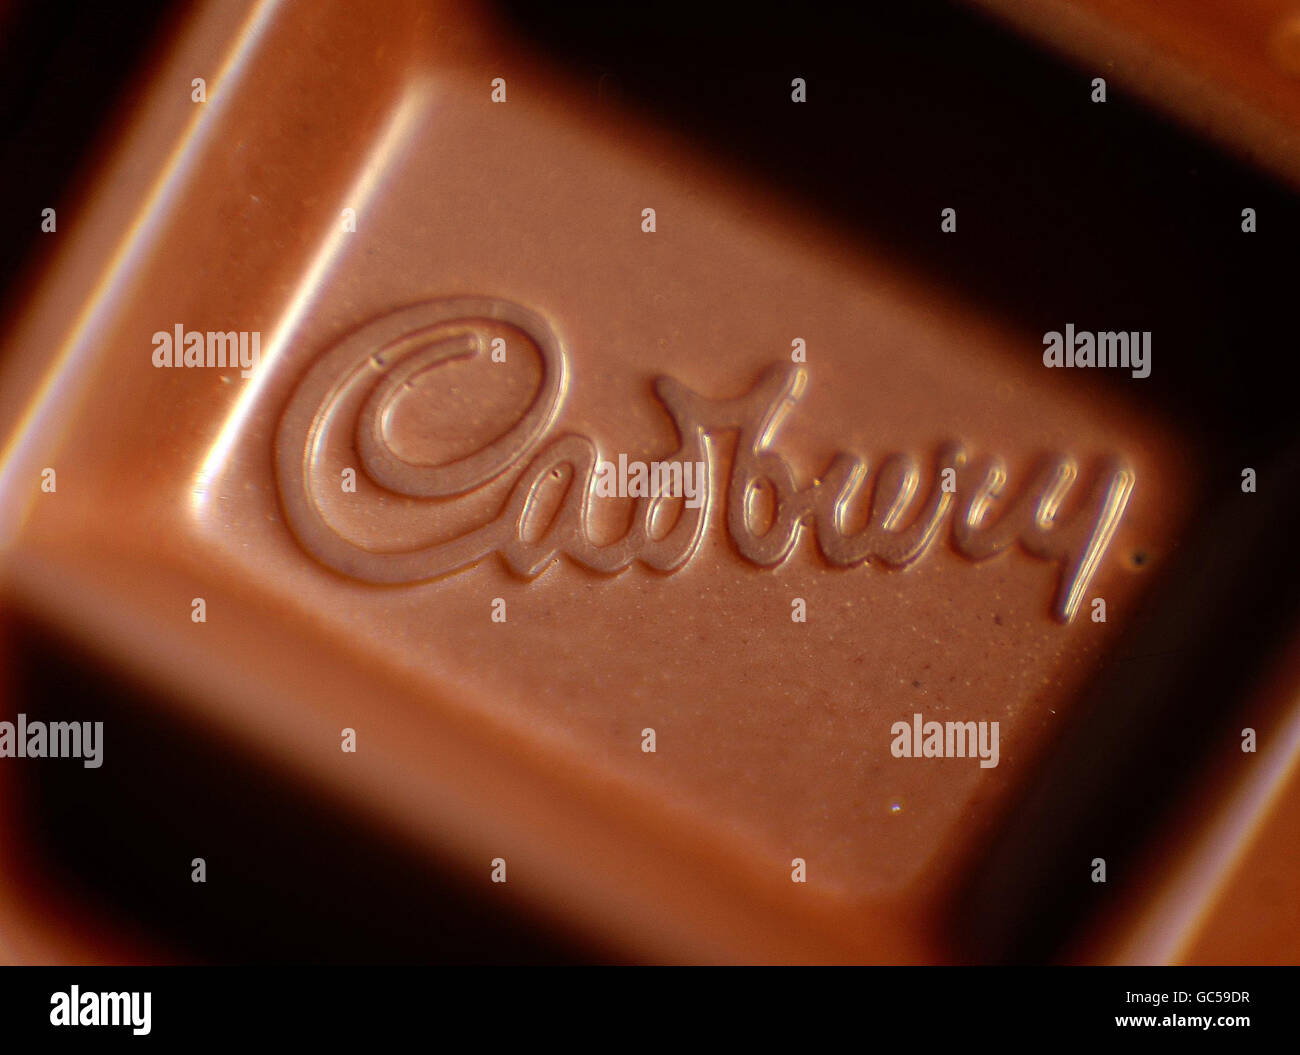 un primer plano de un logotipo de Cadbury en una barra de chocolate Lácteos. El gigante alimentario ESTADOUNIDENSE Kraft lanzó hoy una oferta hostil de adquisición para el fabricante de leche láctea Cadbury. Foto de stock